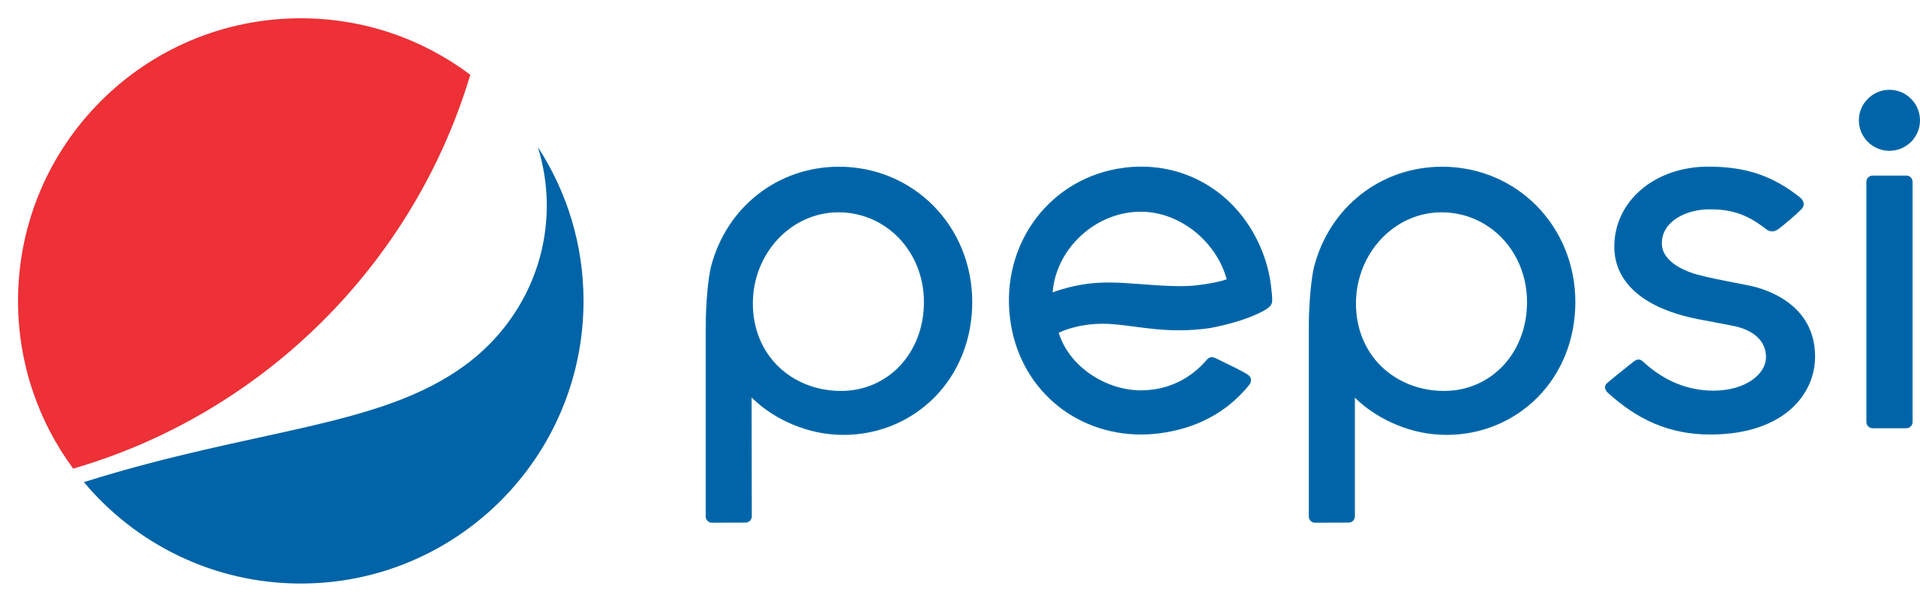 A pepsi logo on a white background